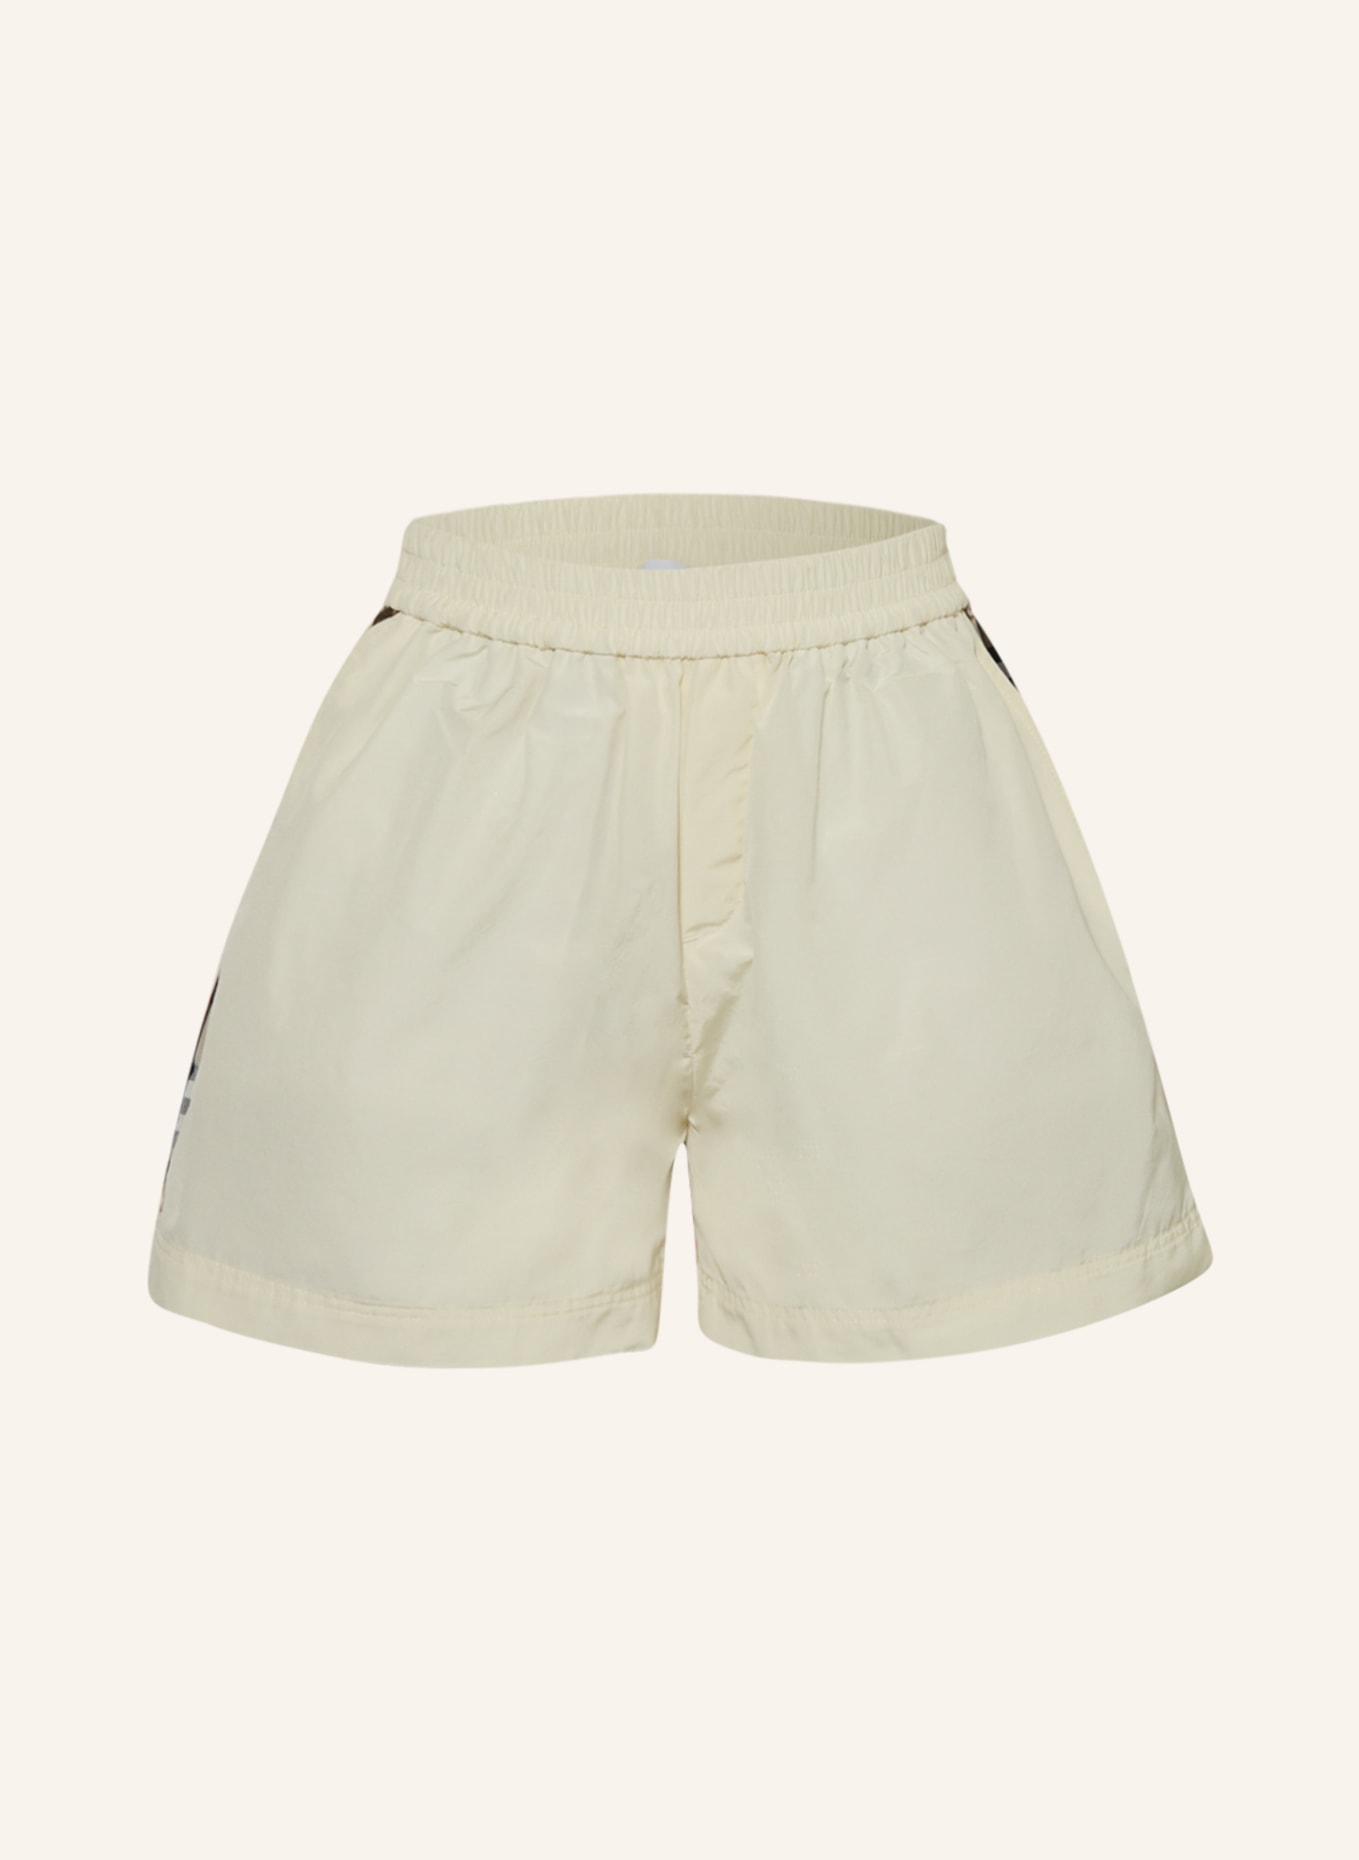 BURBERRY Shorts, Farbe: CREME/ BEIGE/ SCHWARZ (Bild 1)